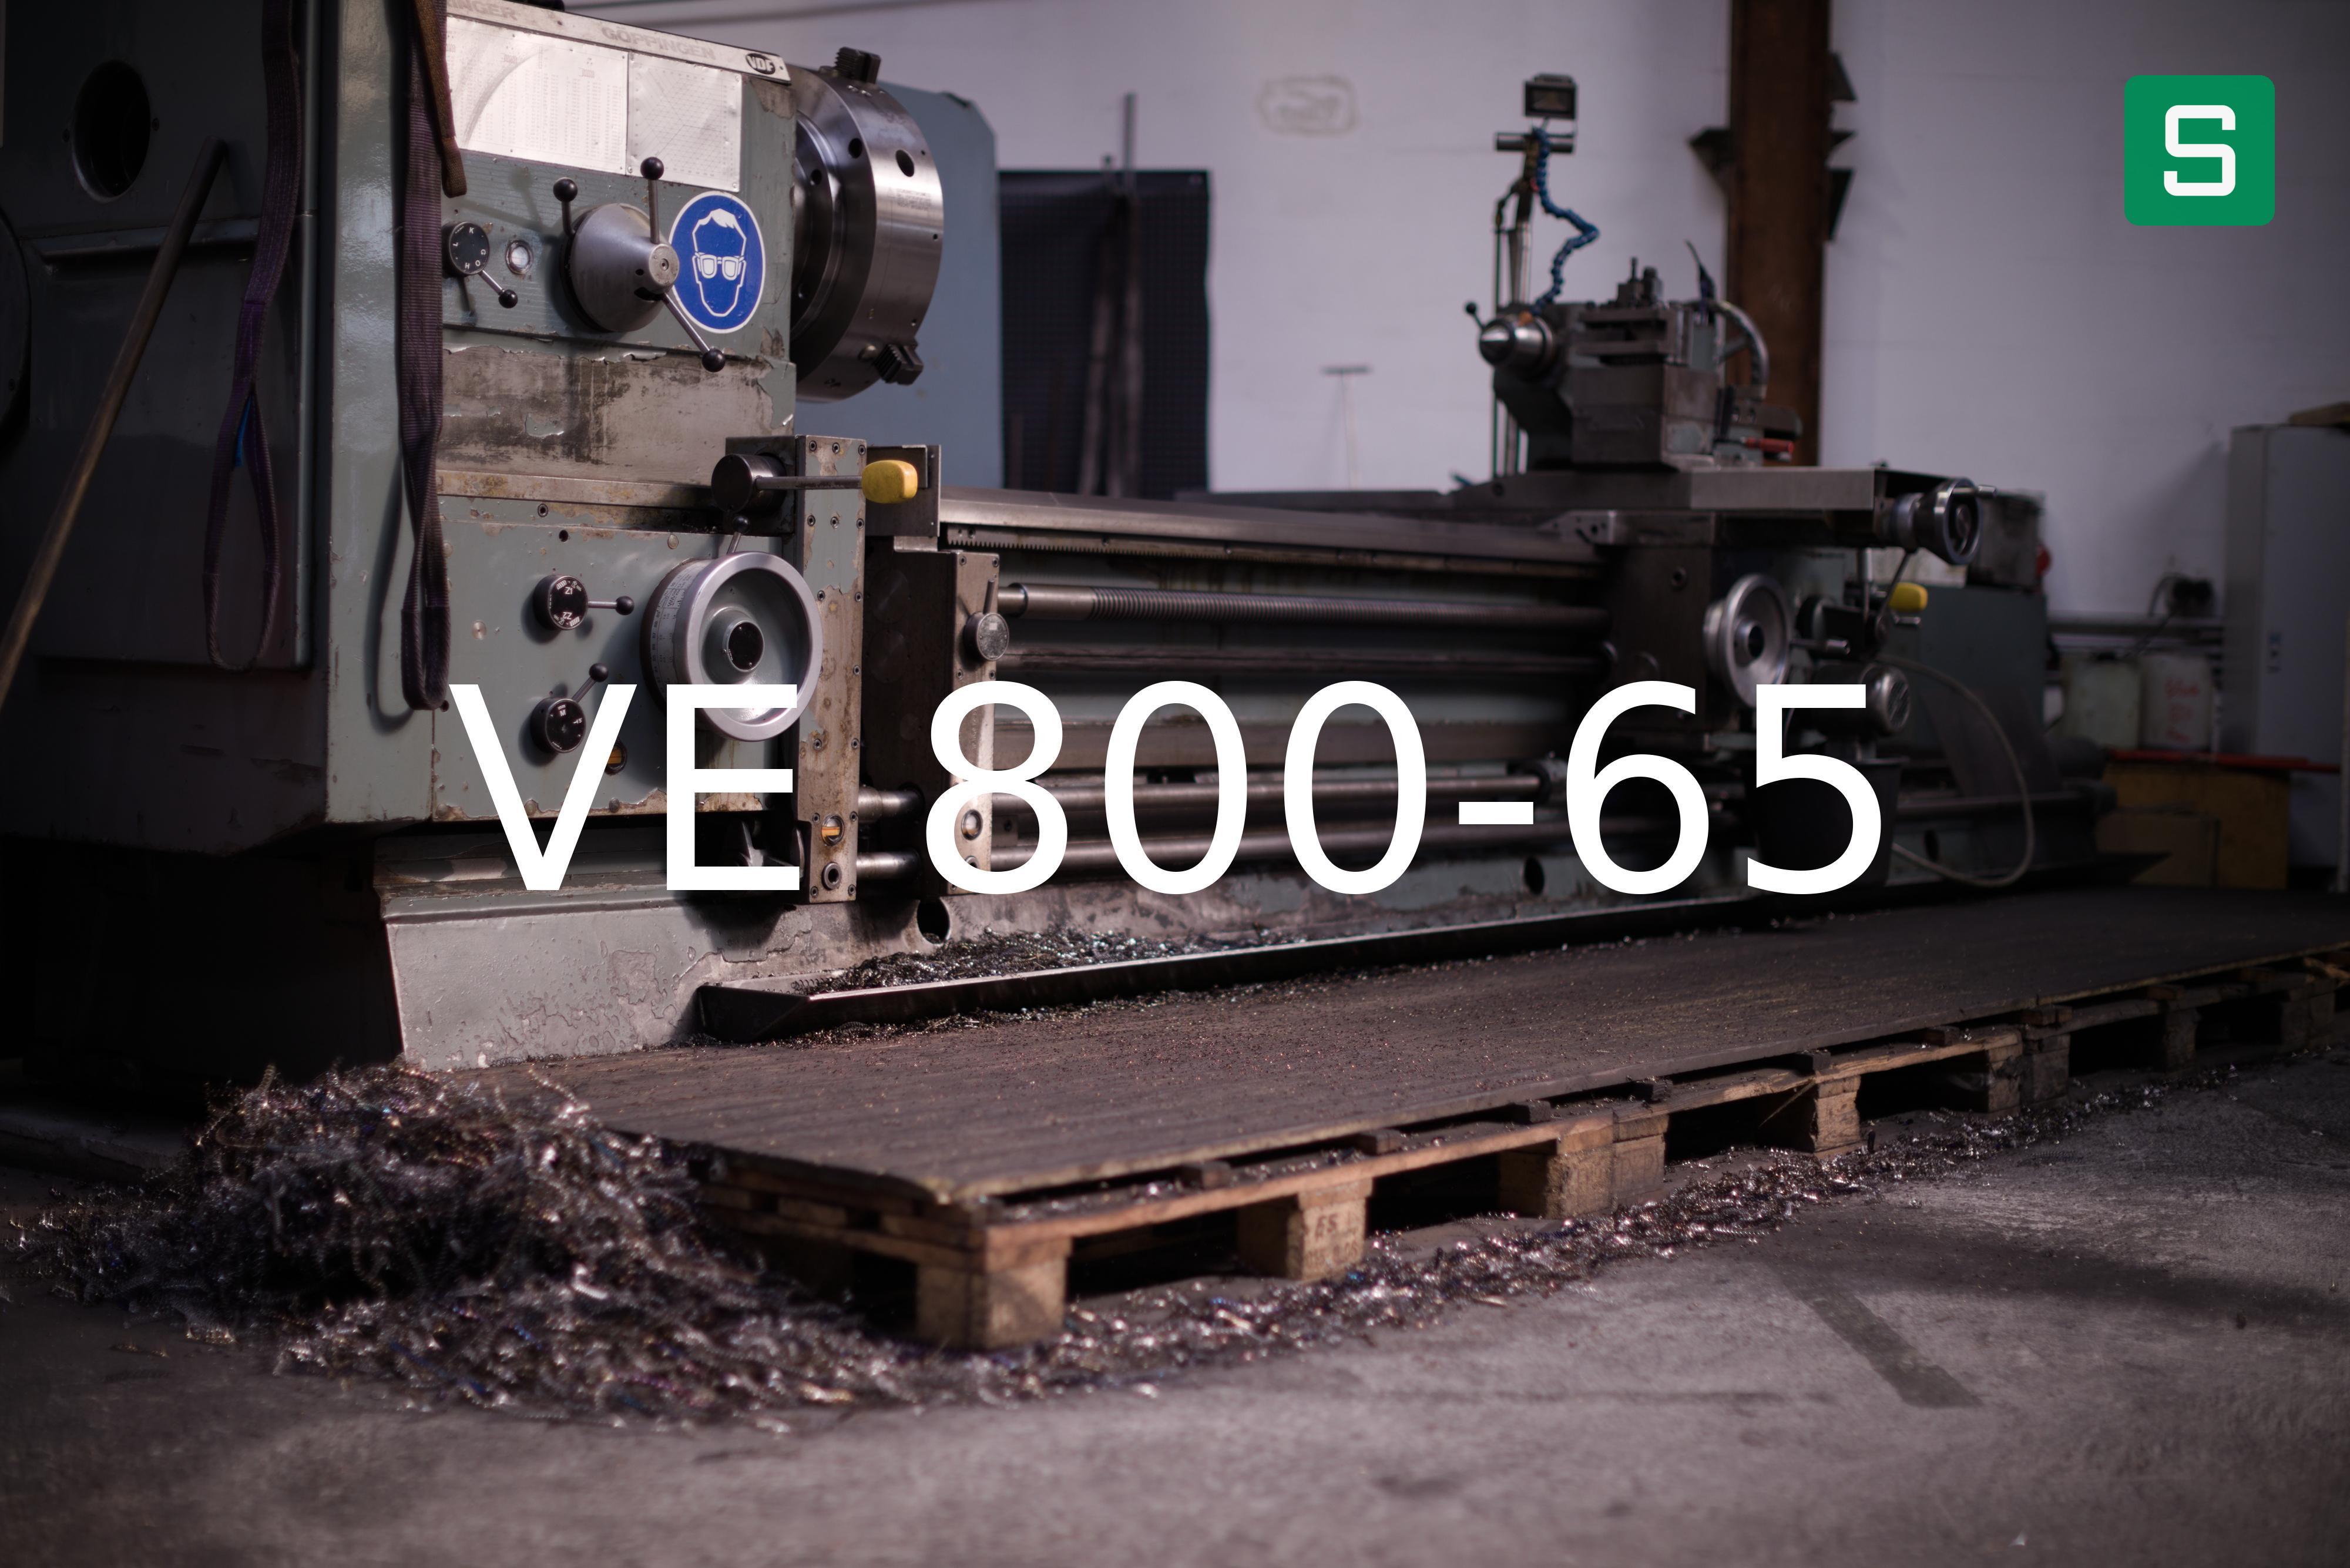 Steel Material: VE 800-65